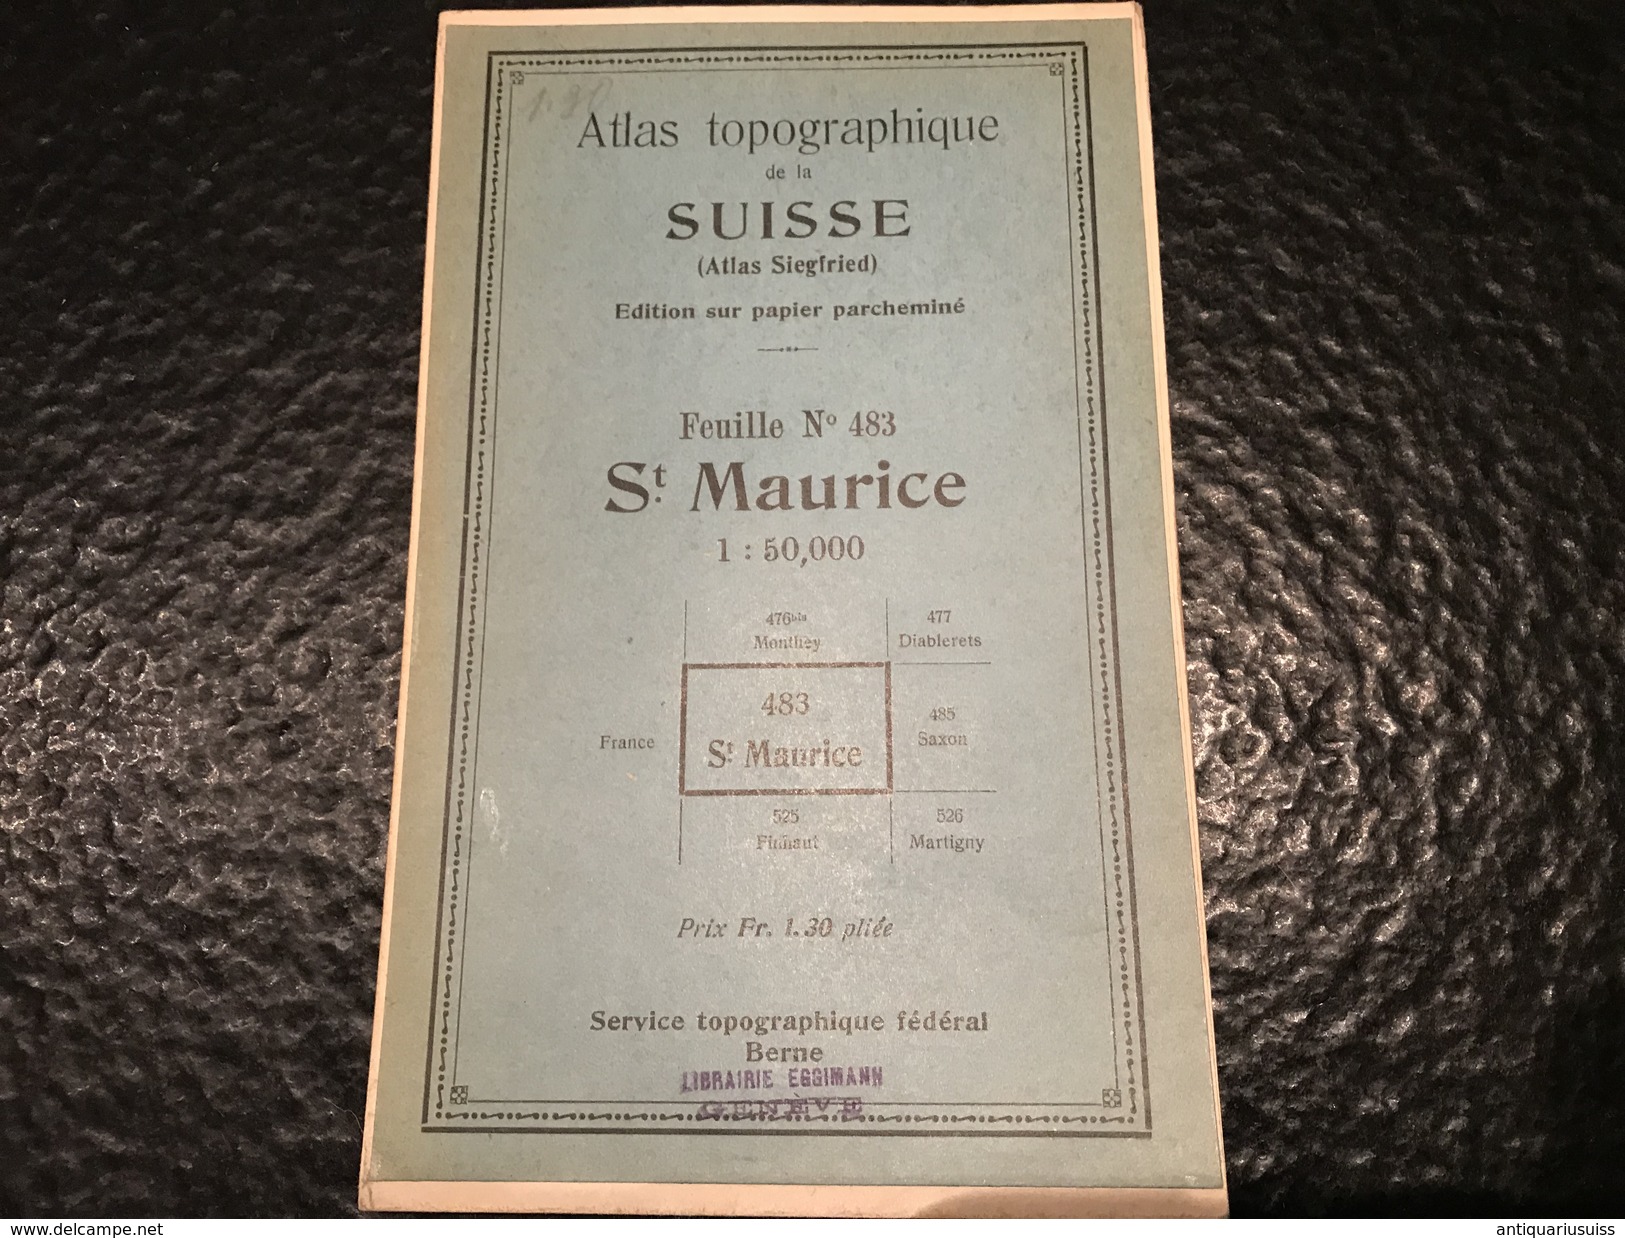 St. Maurice - TOPOGRAPHISCHE ATLAS DER SCHWEIZ - CARTE TOPOGRAPHIQUE DE LA SUISSE- Feuille 483 - Cartes Topographiques